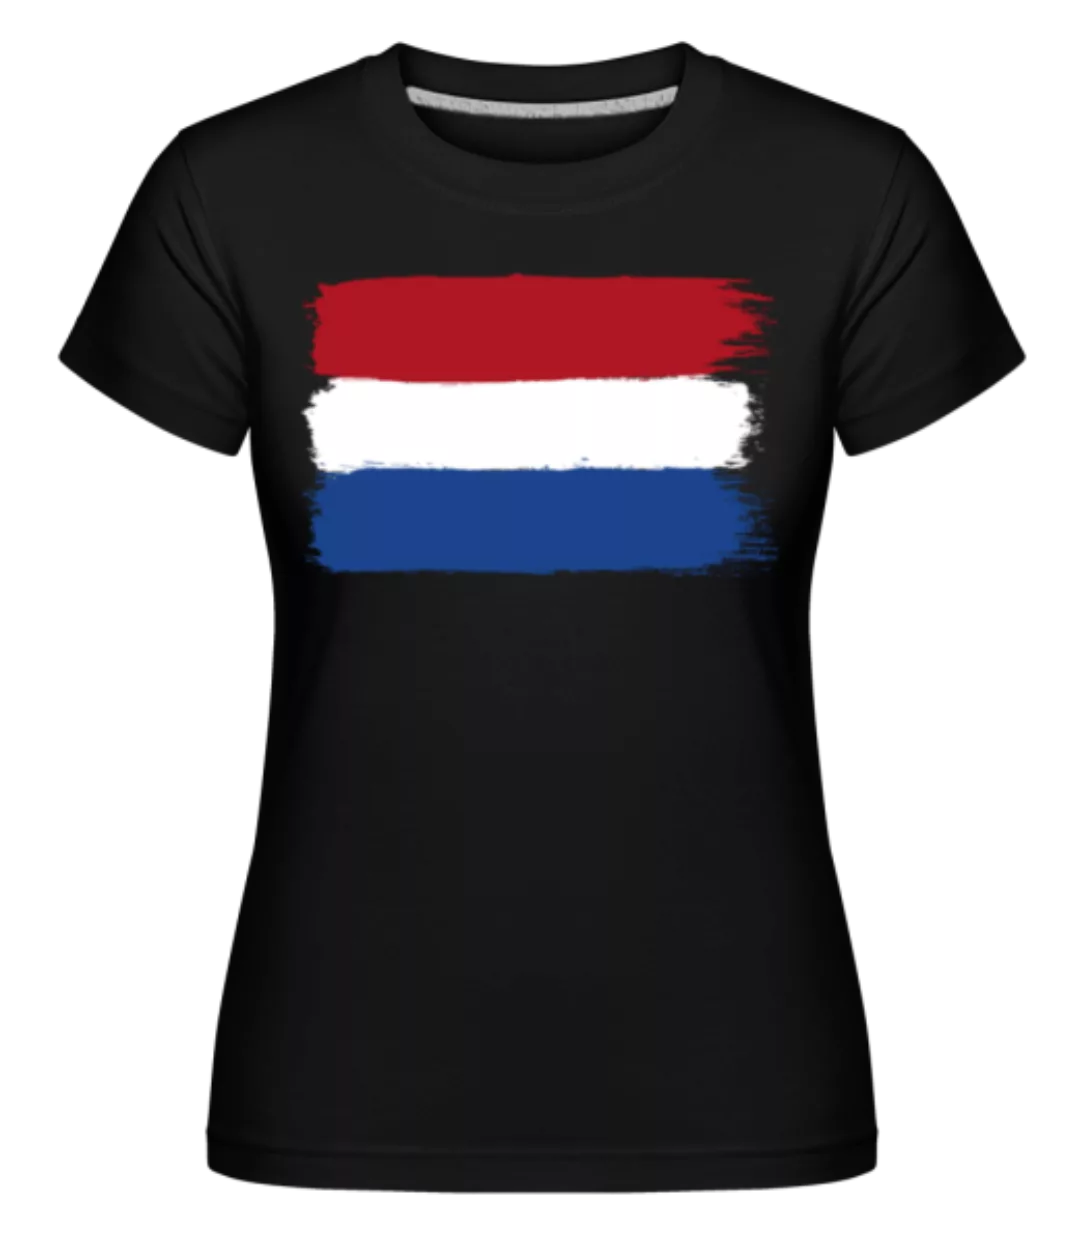 Länder Flagge Niederlande · Shirtinator Frauen T-Shirt günstig online kaufen